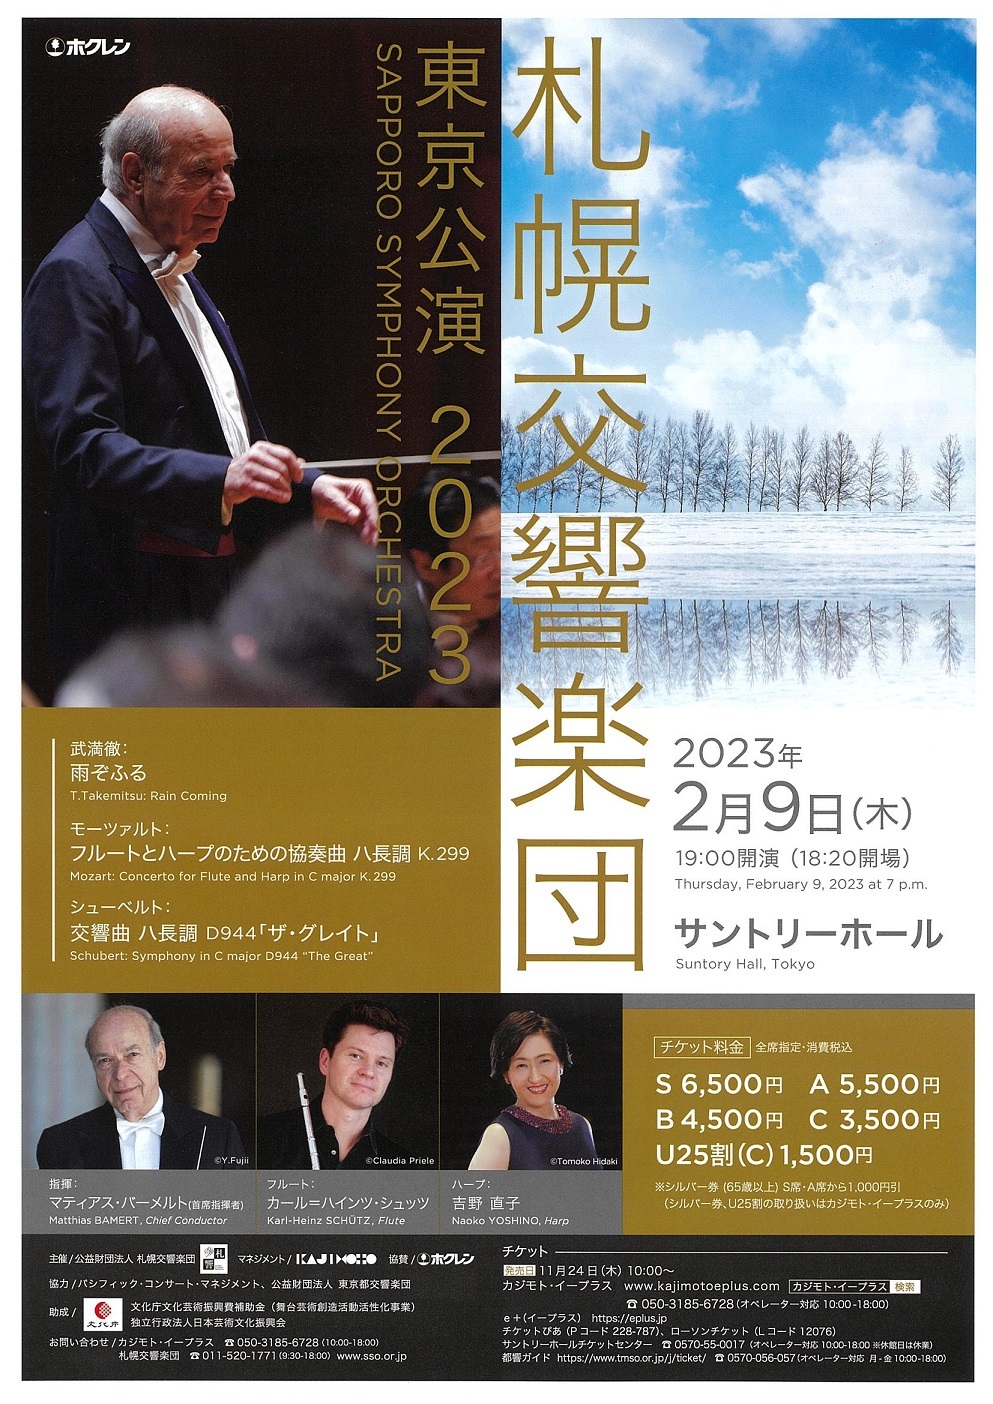 【当日券】2月9日『札響東京公演2023』 当日券販売とご来場の皆様へ